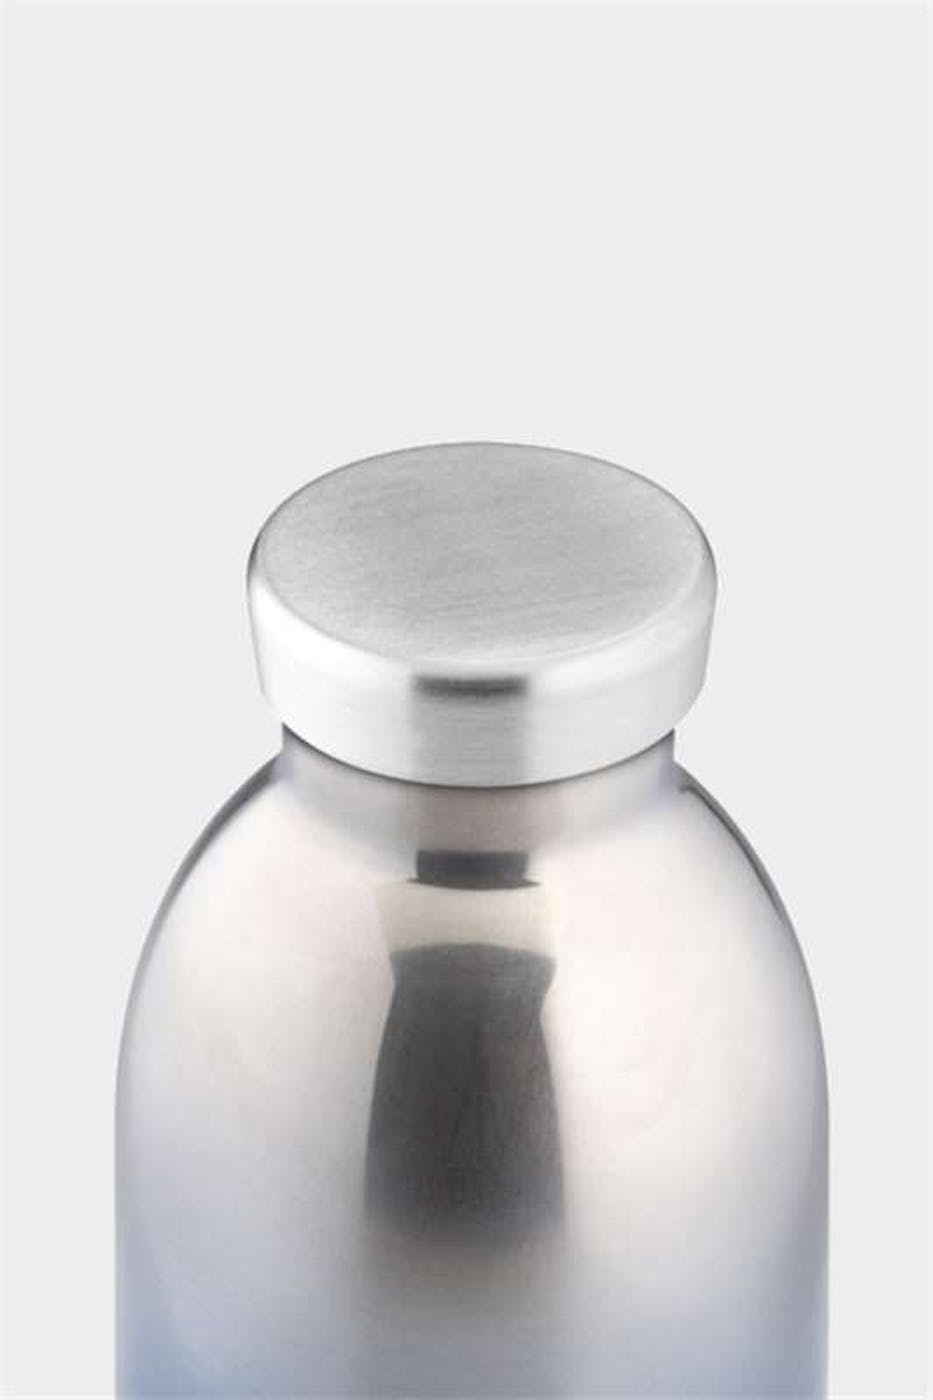 24 bottles - Degradé metaalkleurige Diesel Clima Bottle - 500 ml